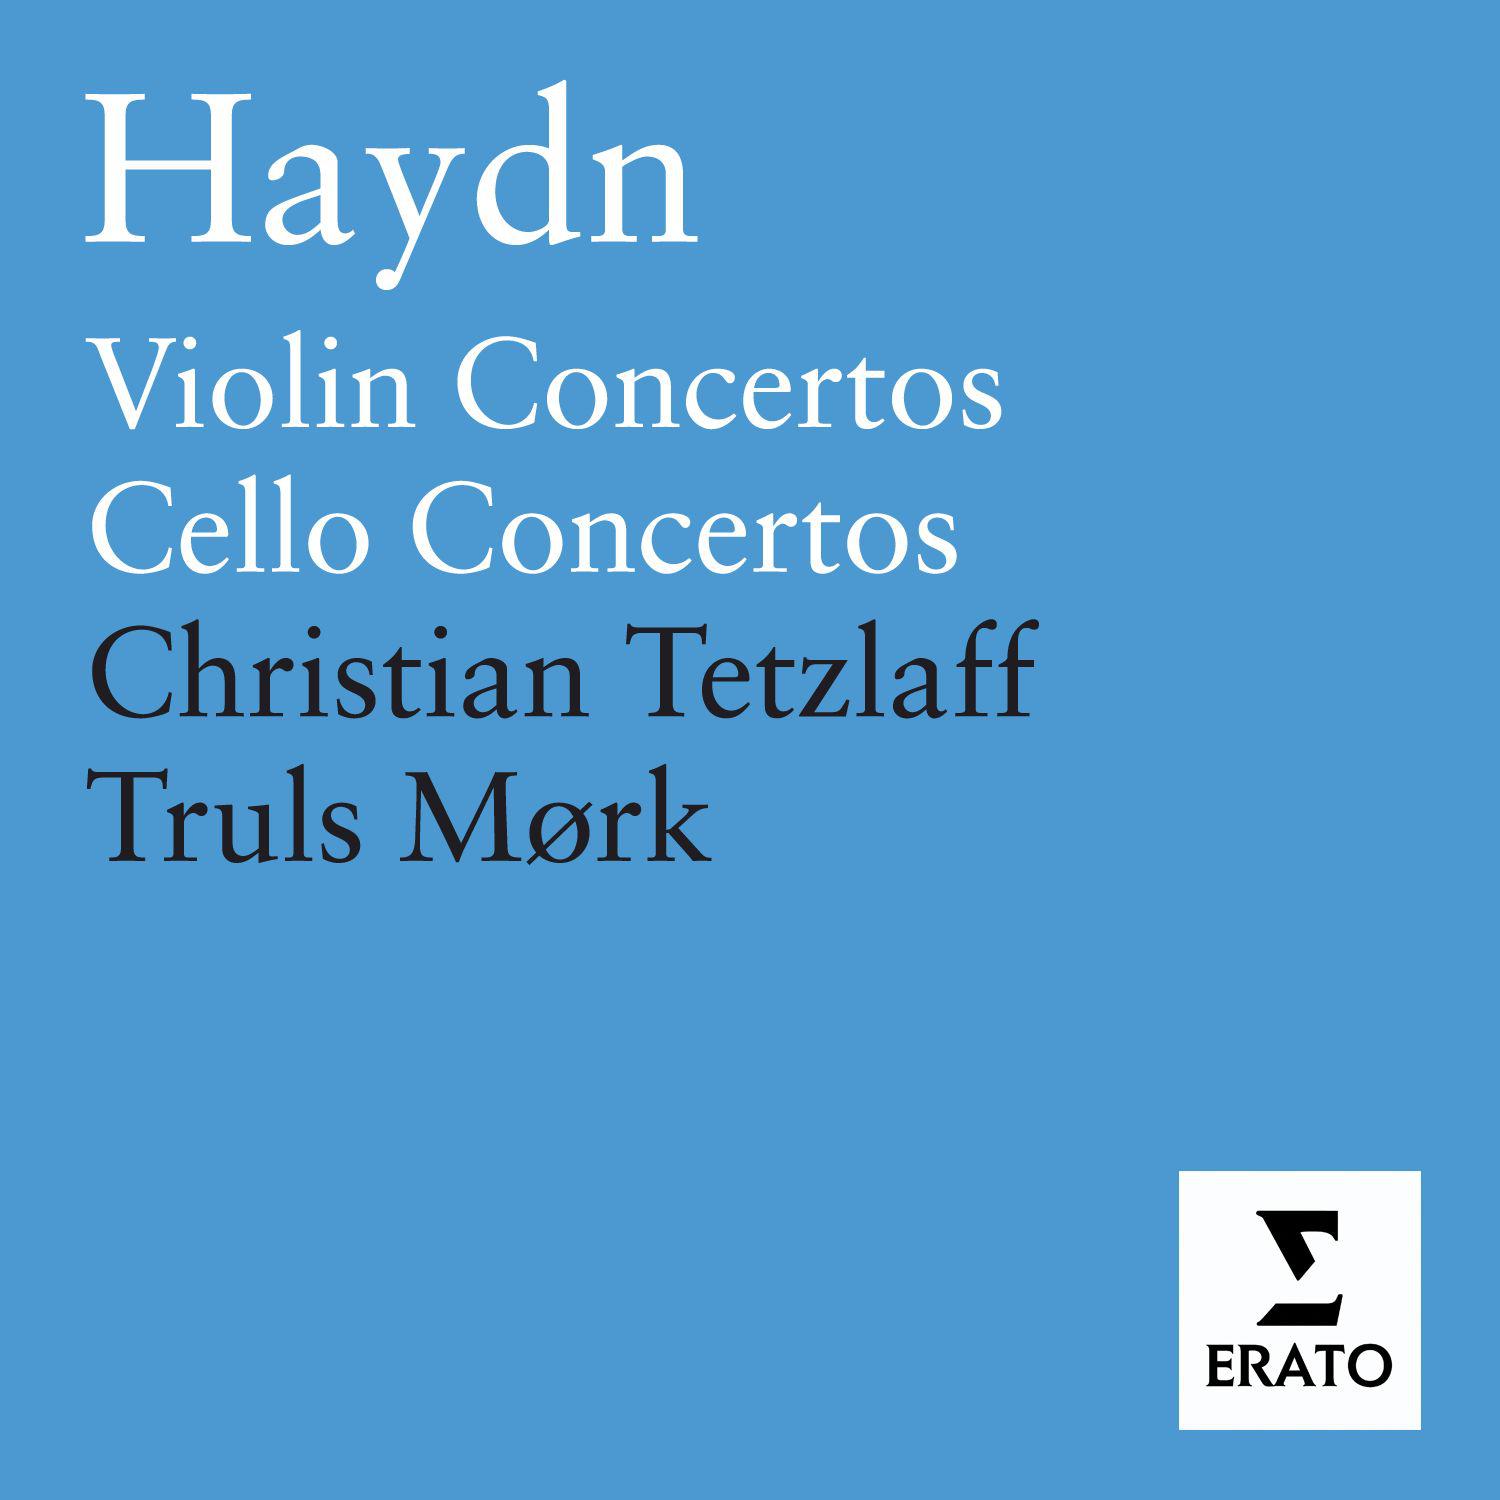 Cello Concerto No. 1 in C Major, Hob. VIIb/1: II. Adagio